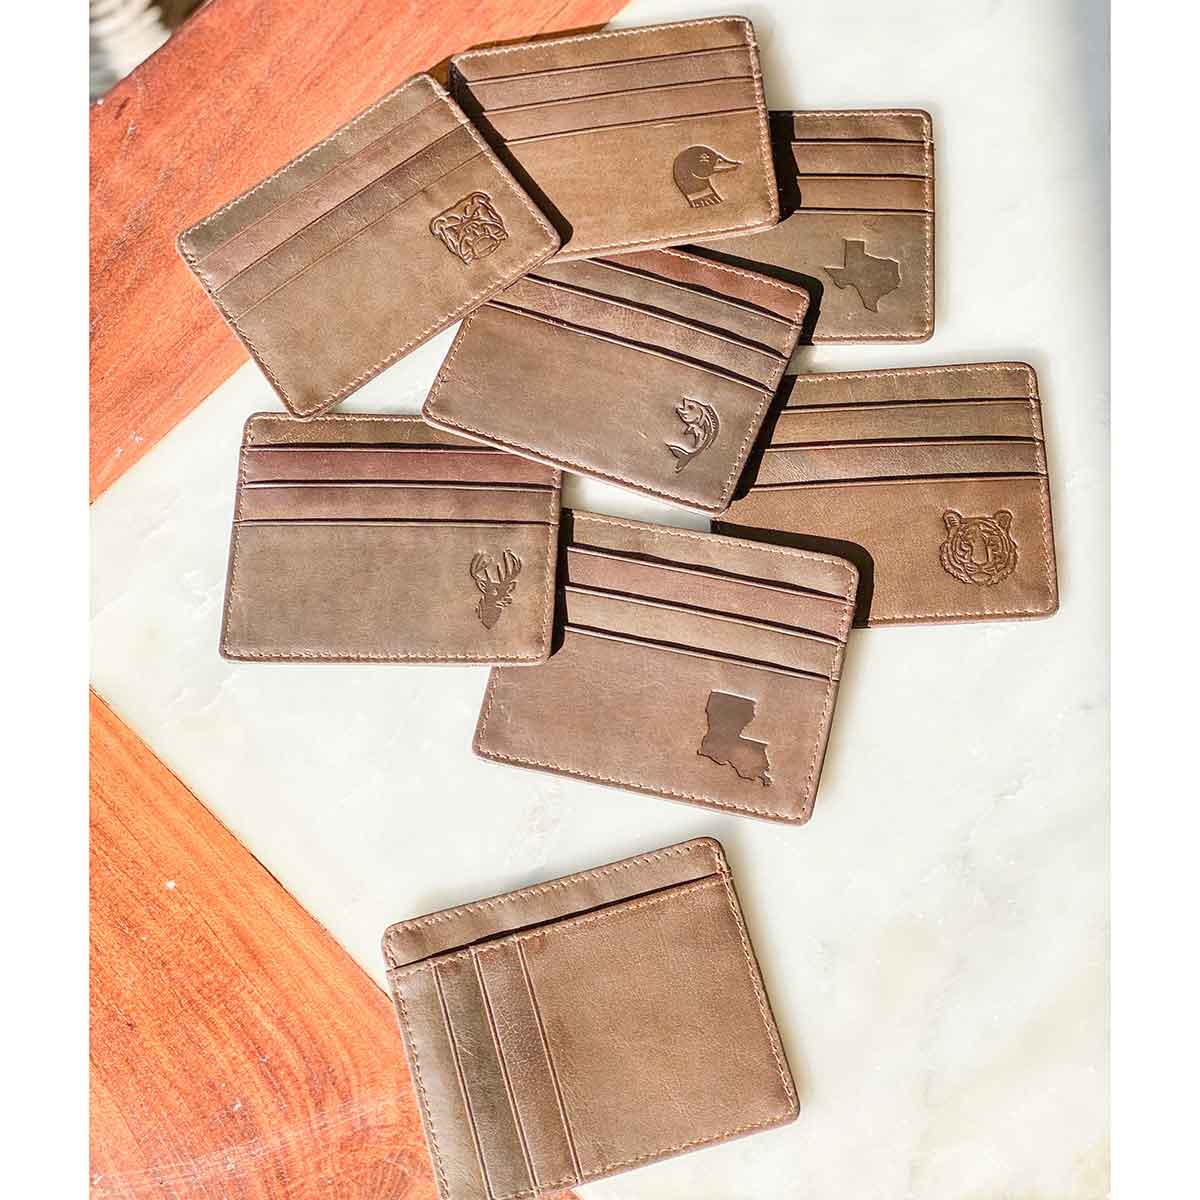 Louisiana Leather Embossed Slim Wallet   Dark Brown   3.5x4